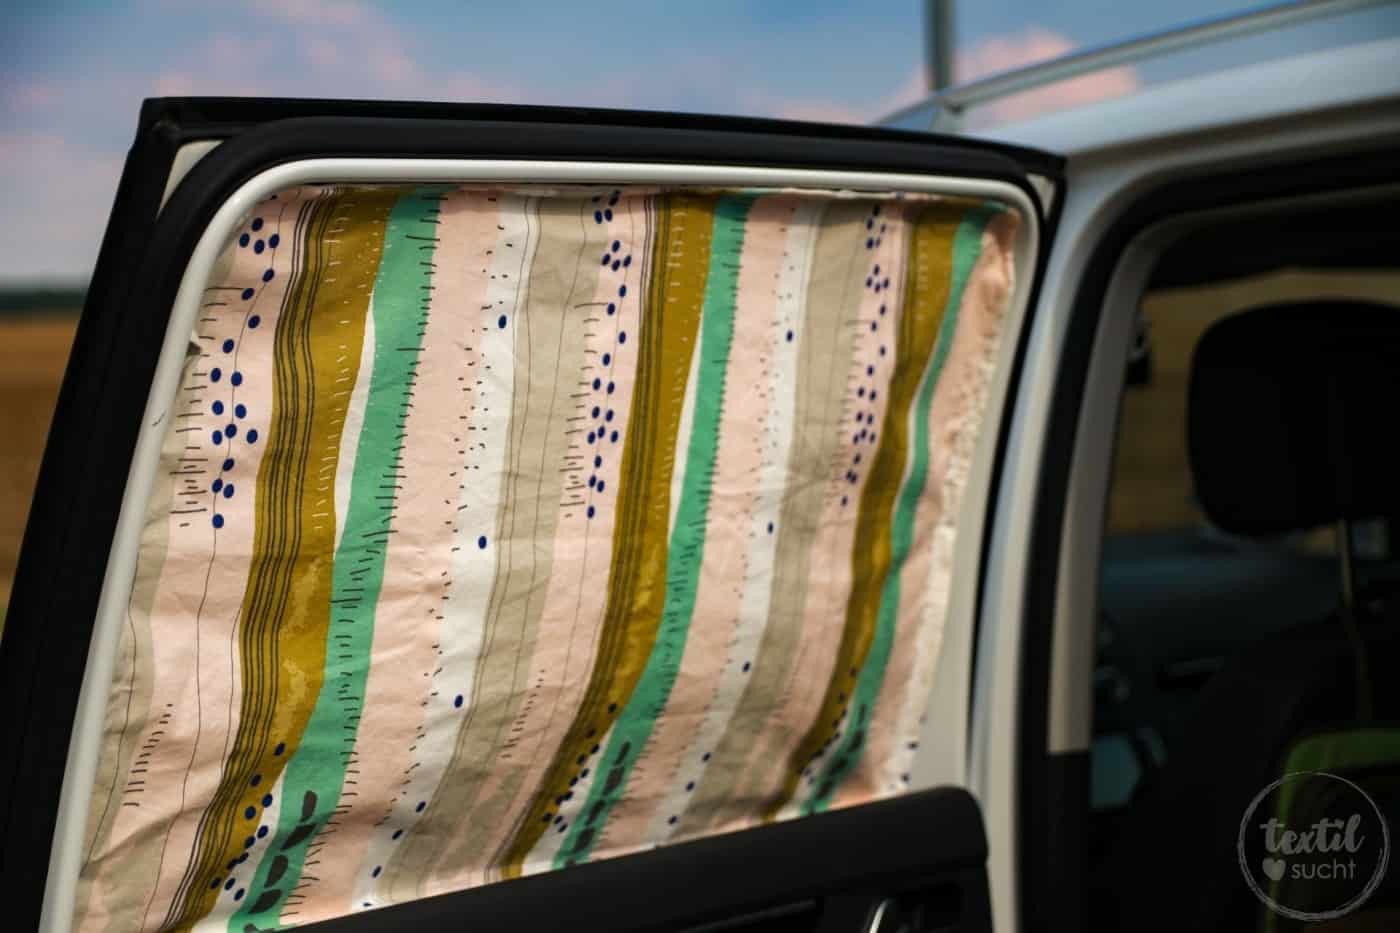 Auto-seitenfenster-sonnenschutz, Einlagige Magnetische